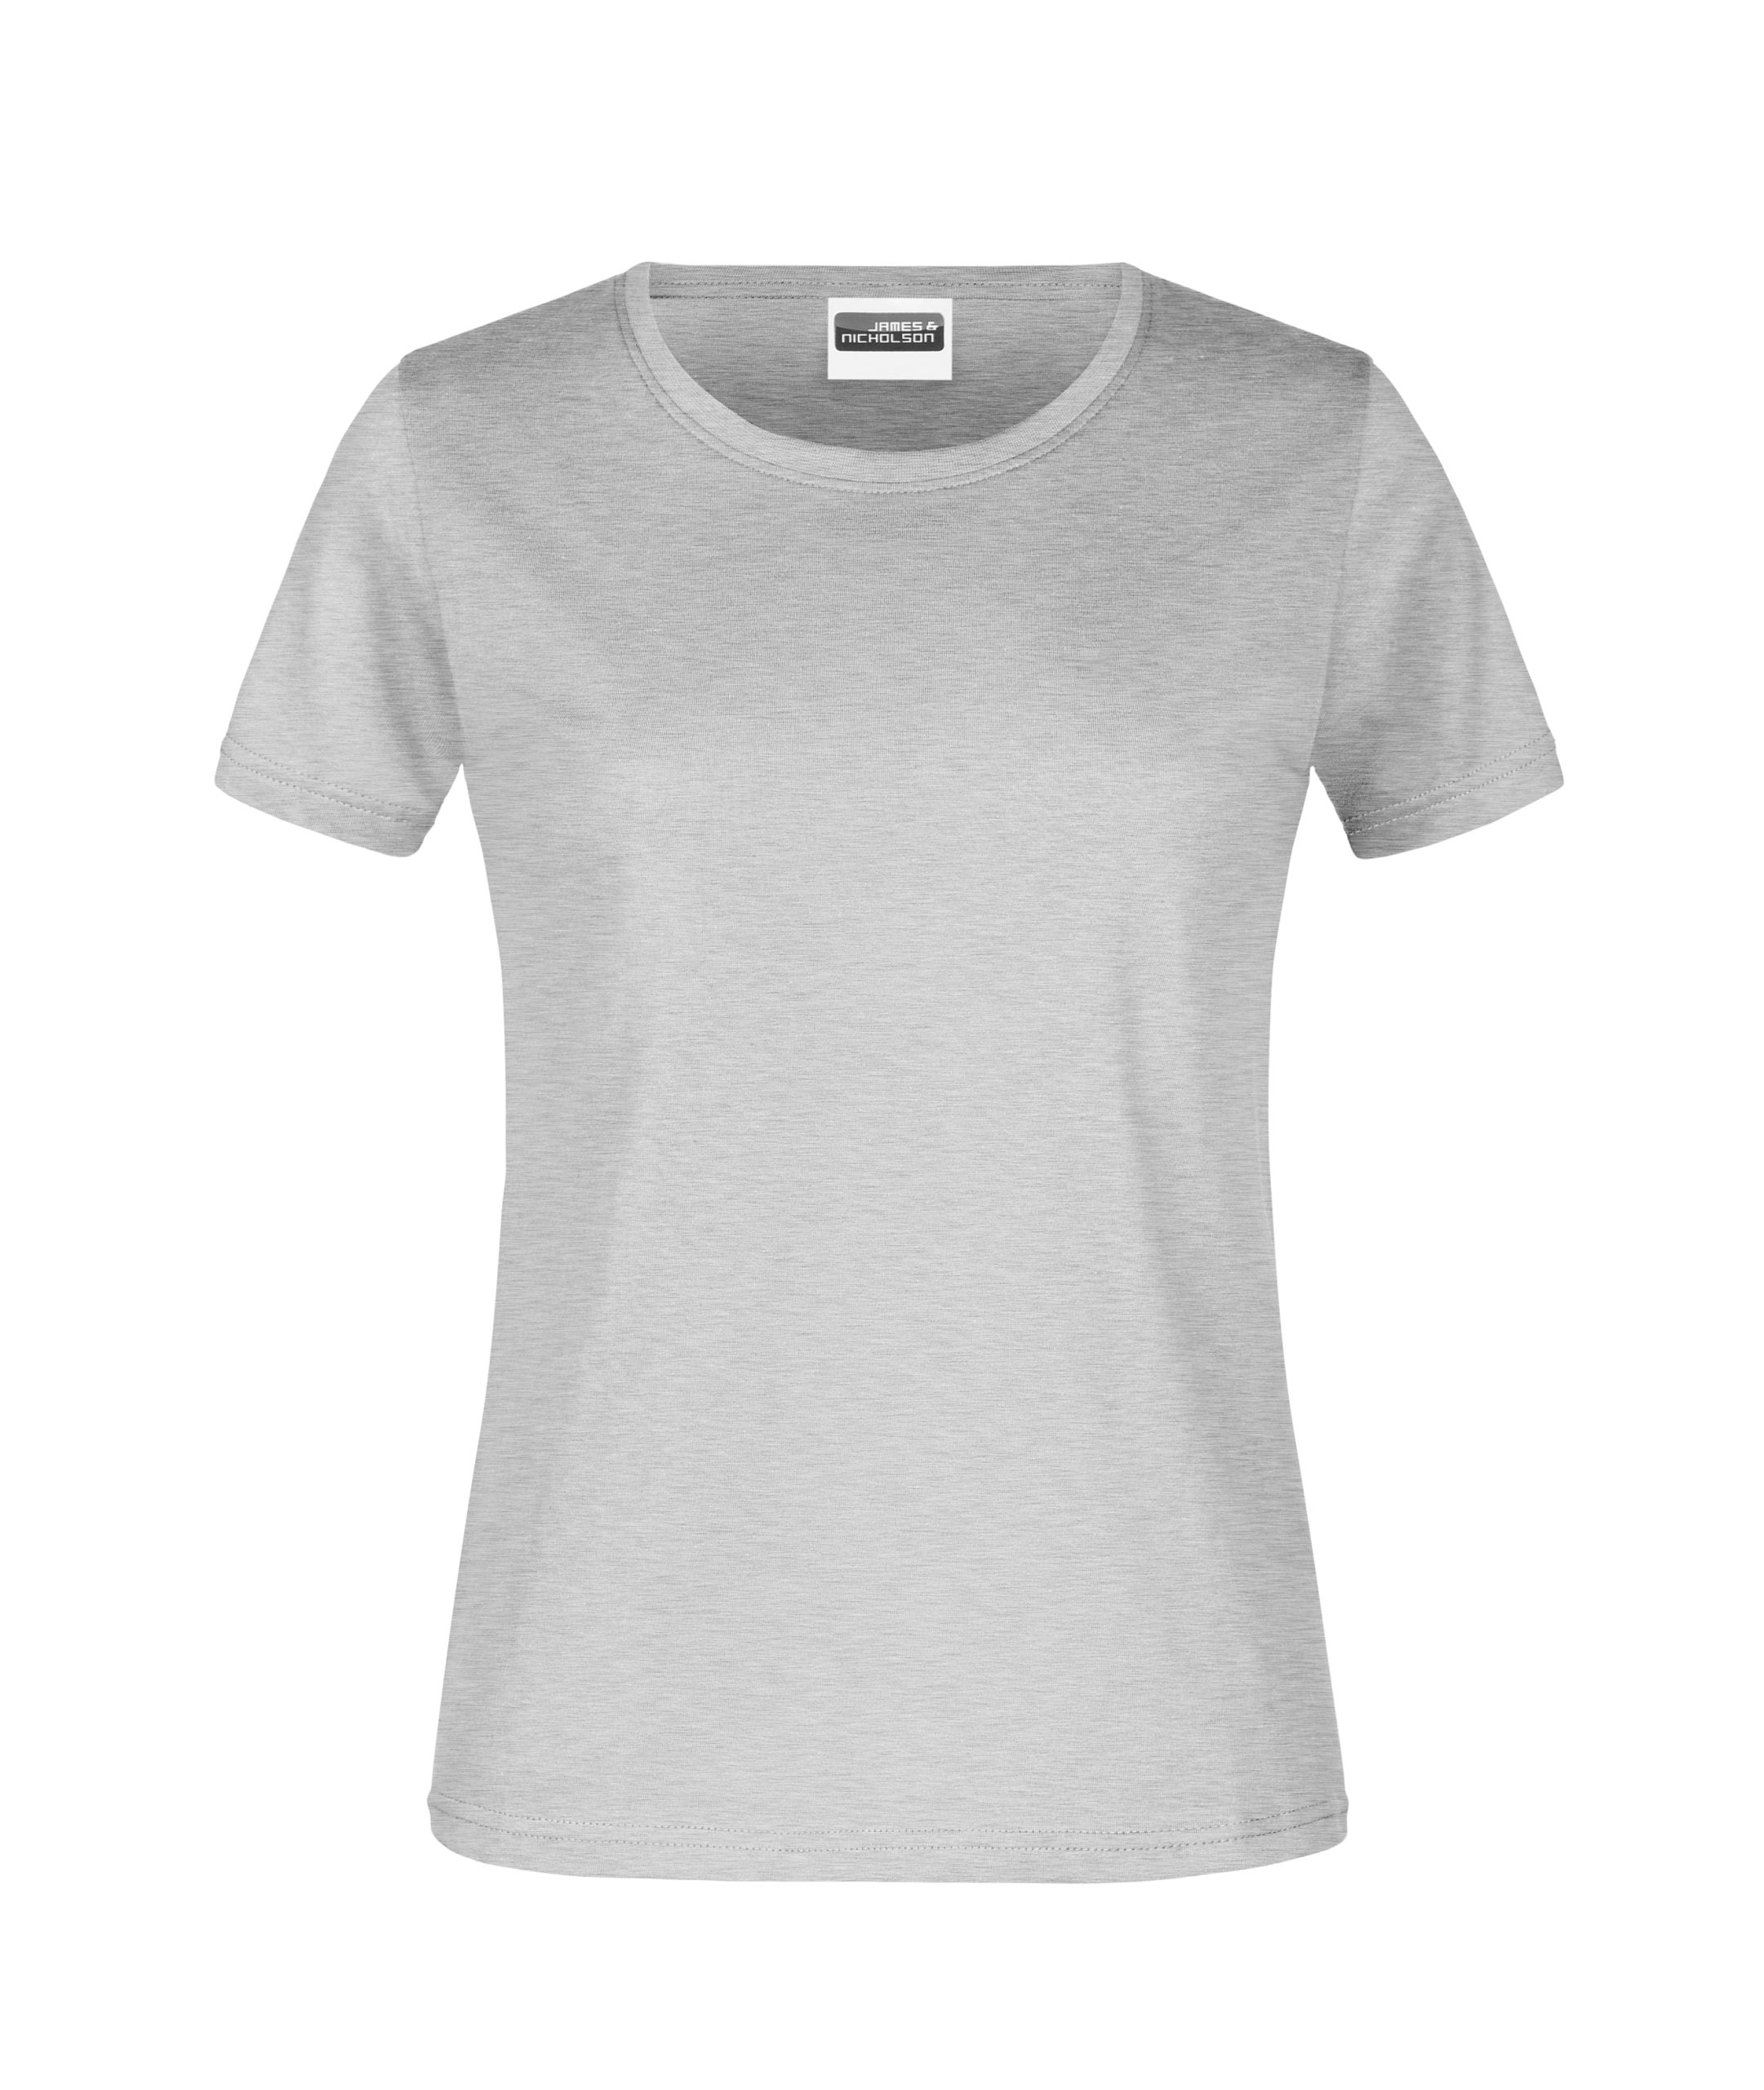 T-Shirt Lady heather grey 180 gr - Bestens Beworben